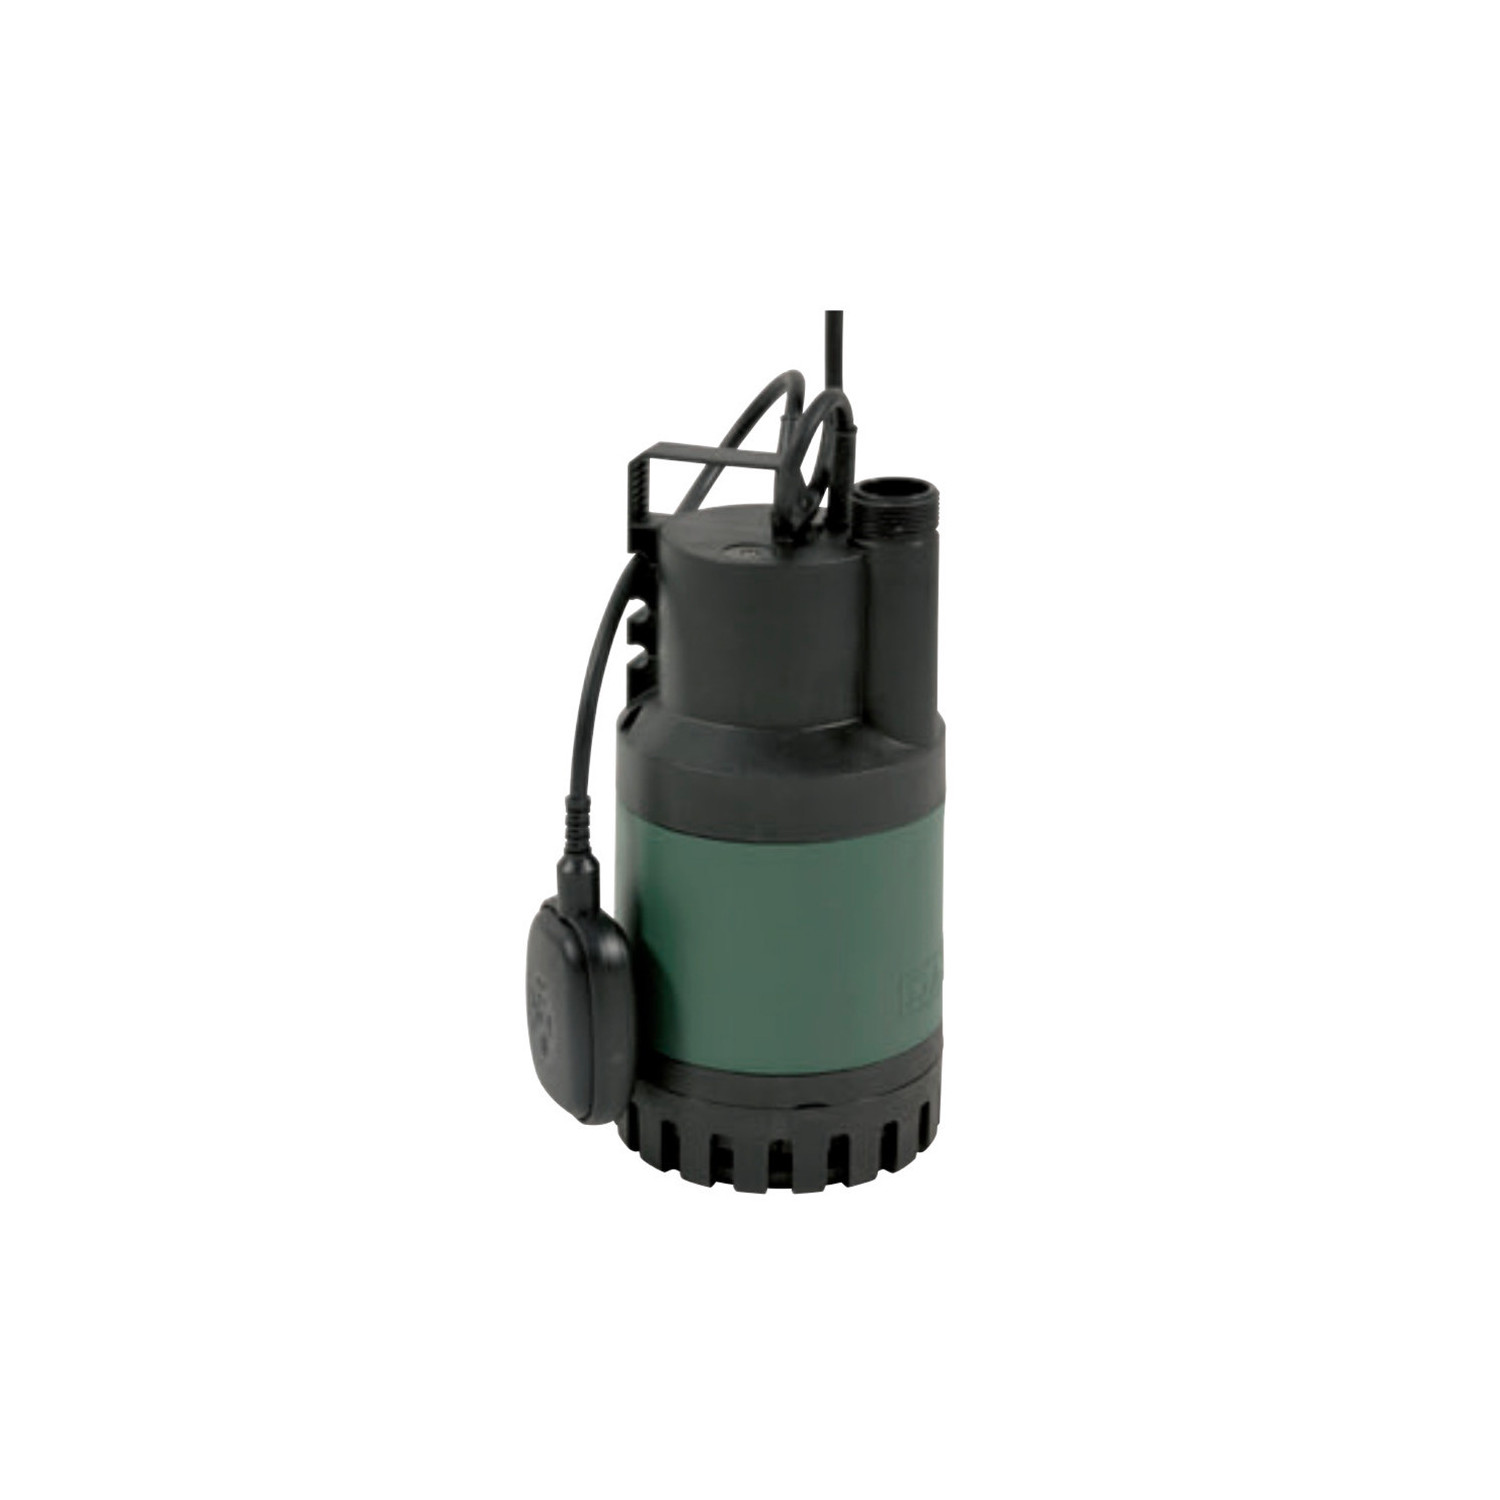 Pompe eau claire DAB NOVA UP 600 AUT FLEX 10M - Pompe de relevage avec flotteur - 0.52kW 9m3/h mono